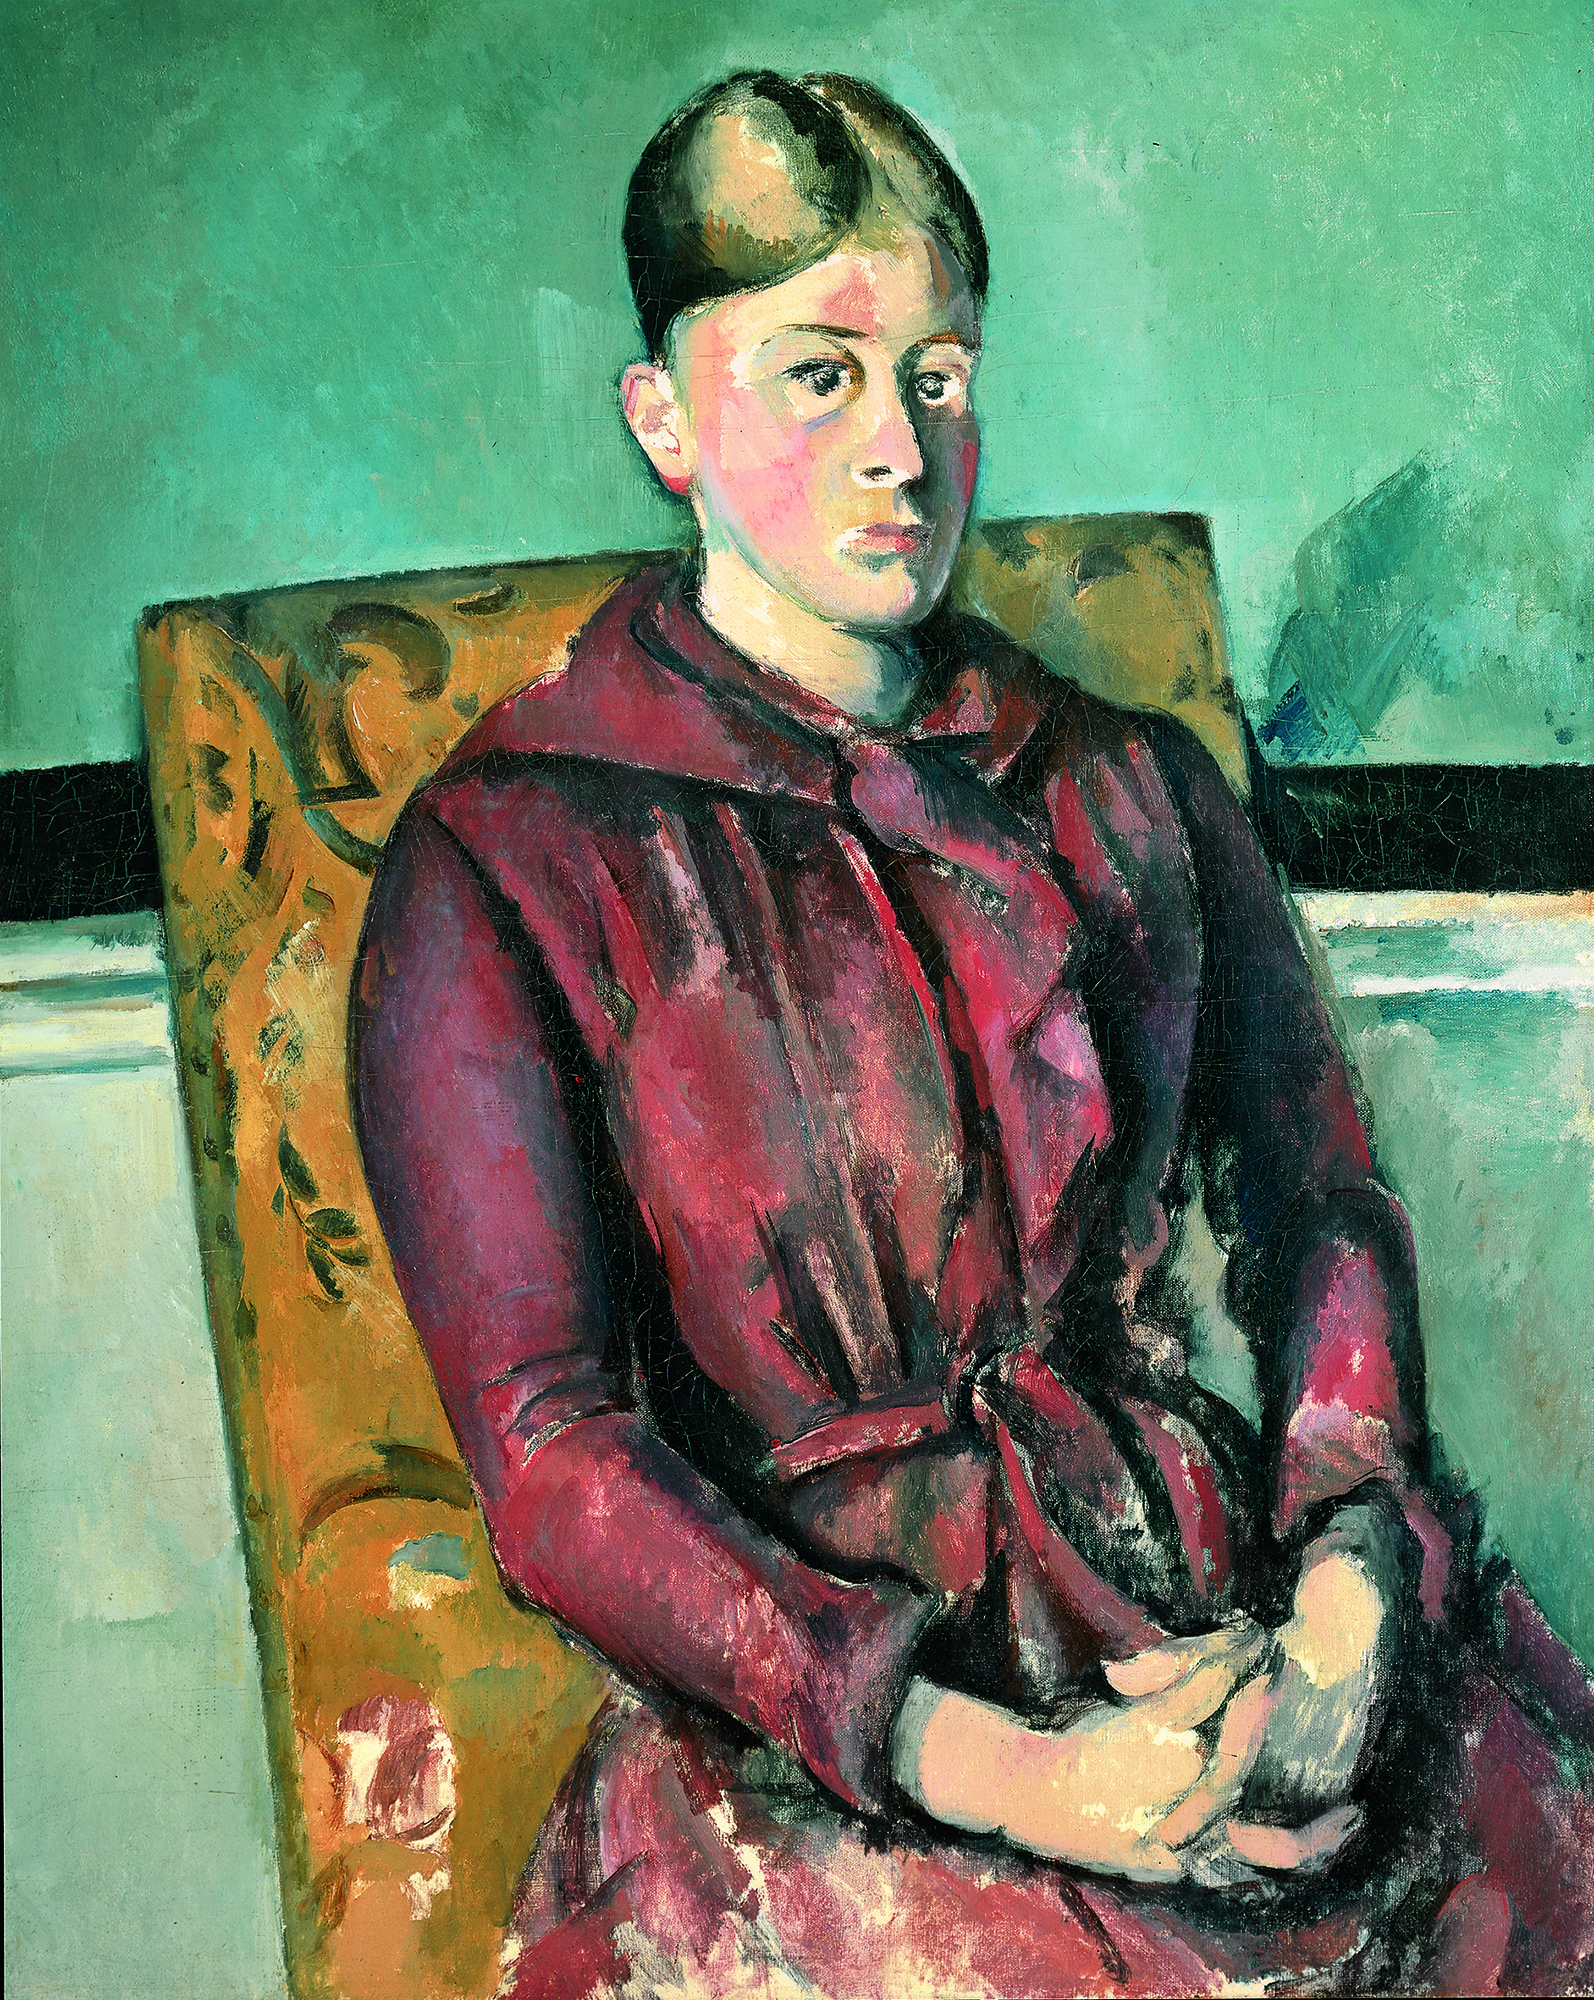 Das Werk Cézannes zeigt eine Frau im roten Kleid. Sie sitzt auf einem gelben Sessel. Der Raum ist türkis gefärbt.